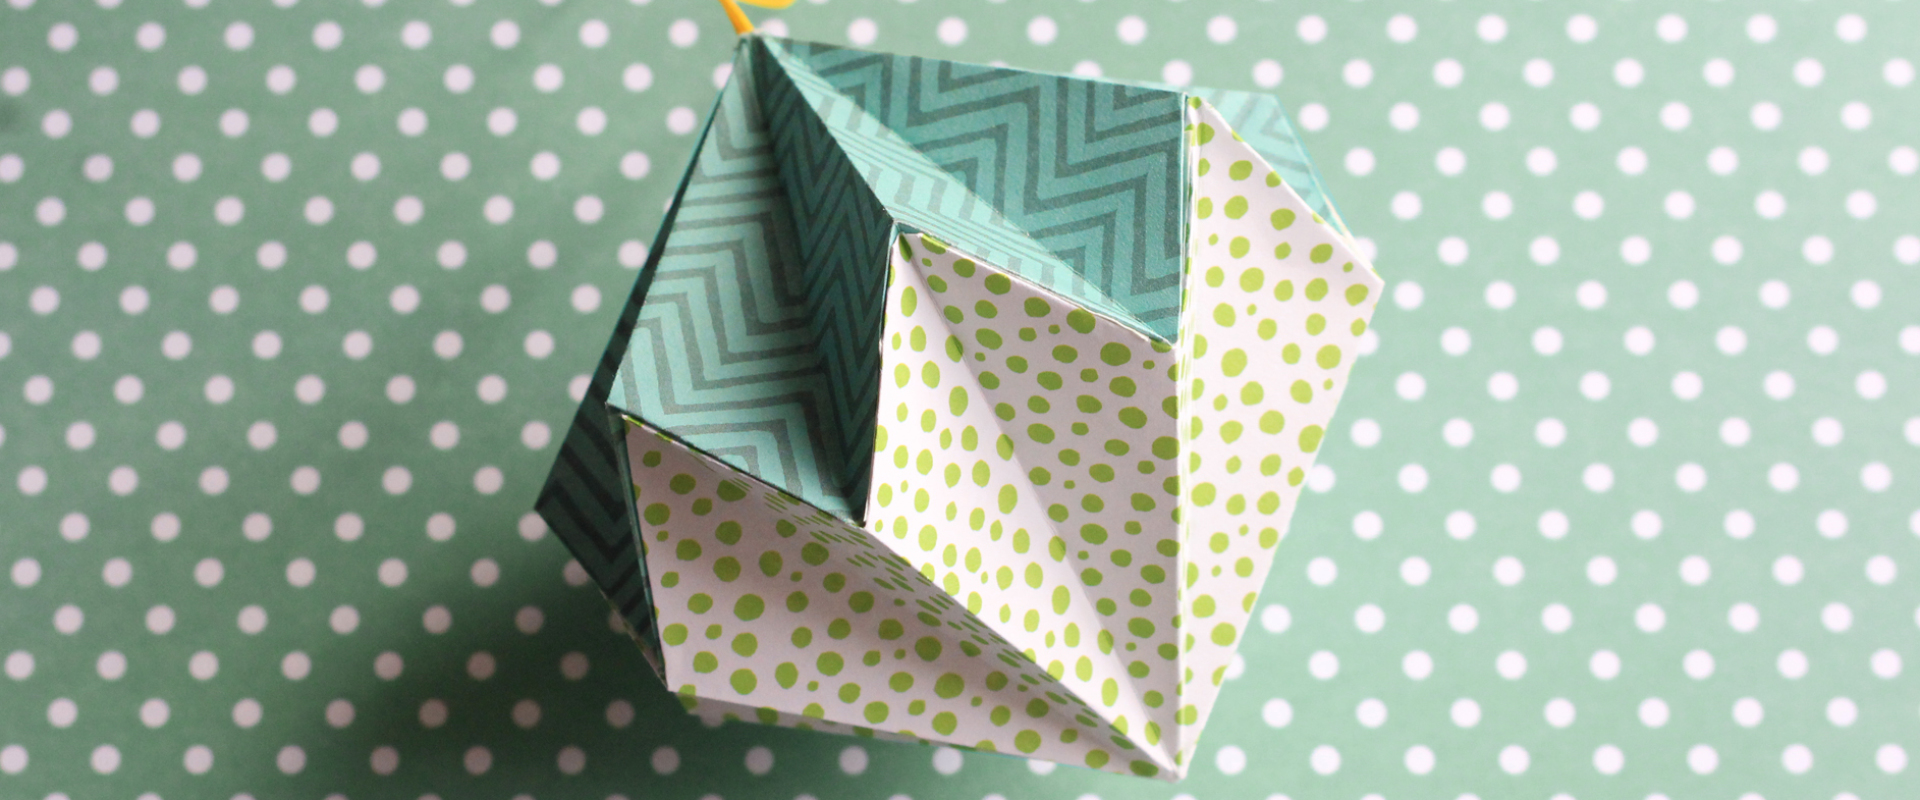 Hoe Maak je een Prachtige Papieren Origami Kerstbal?